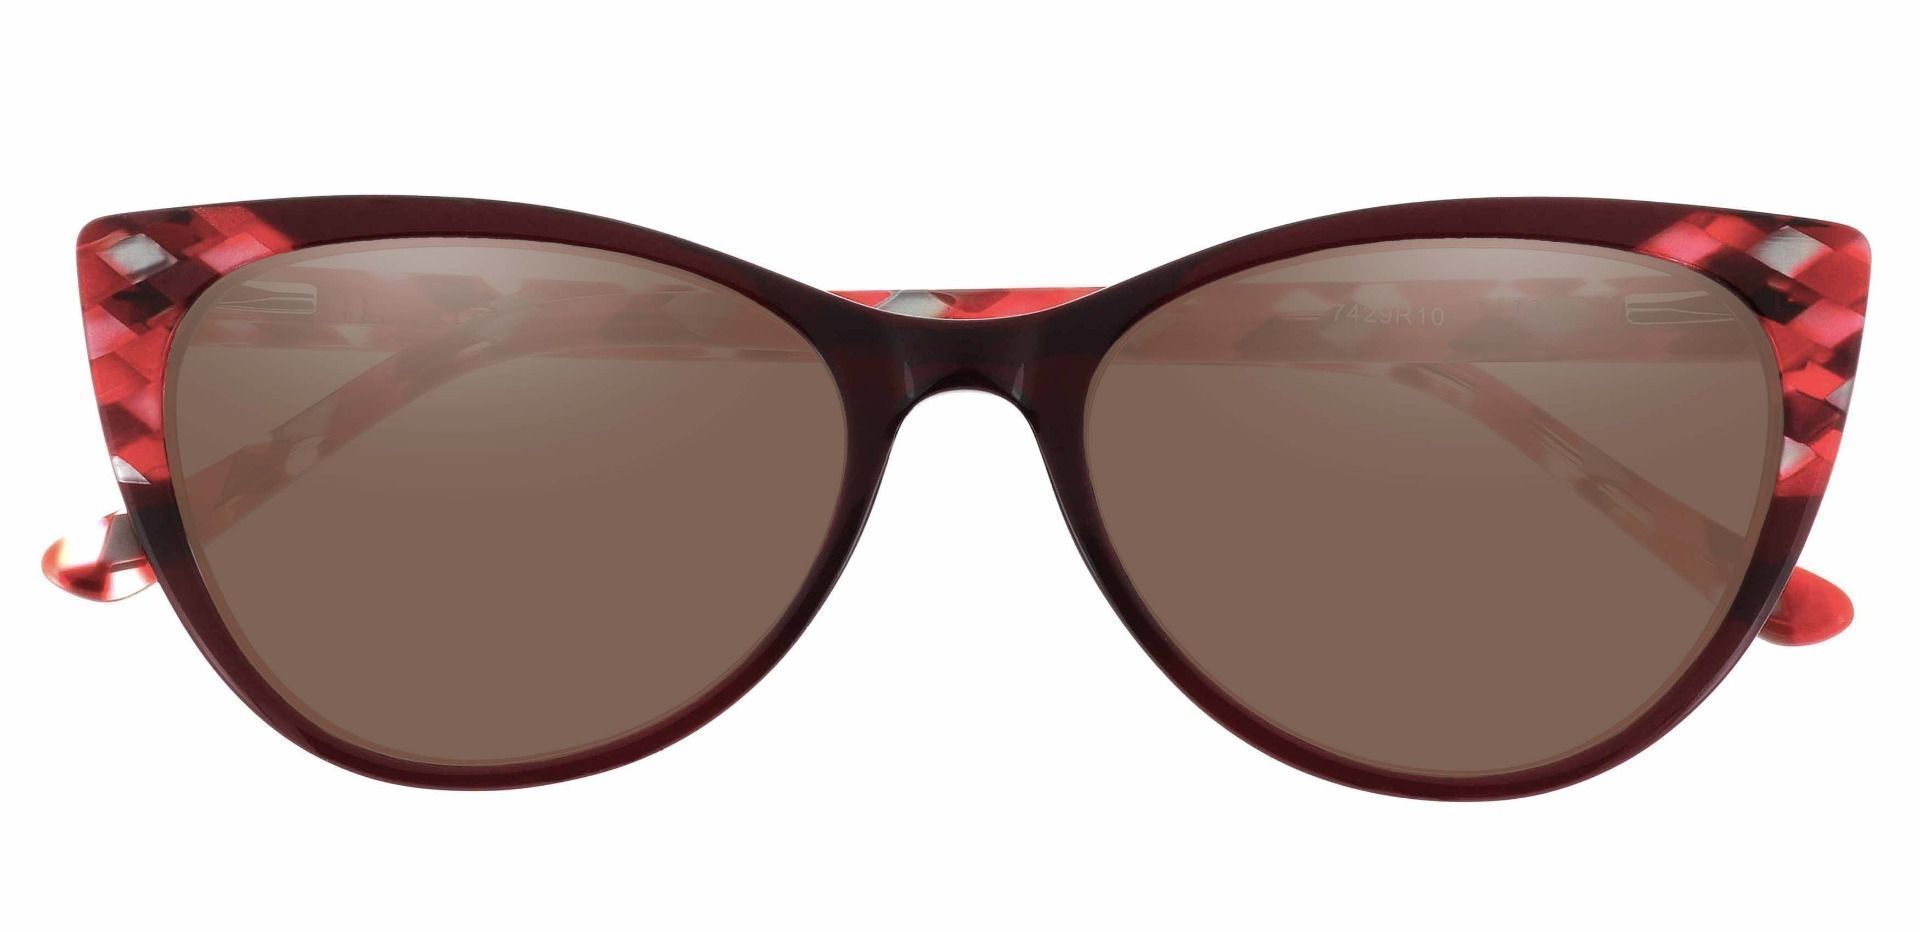 Mavis Cat Eye Prescription Sunglasses - Red Frame With Brown Lenses